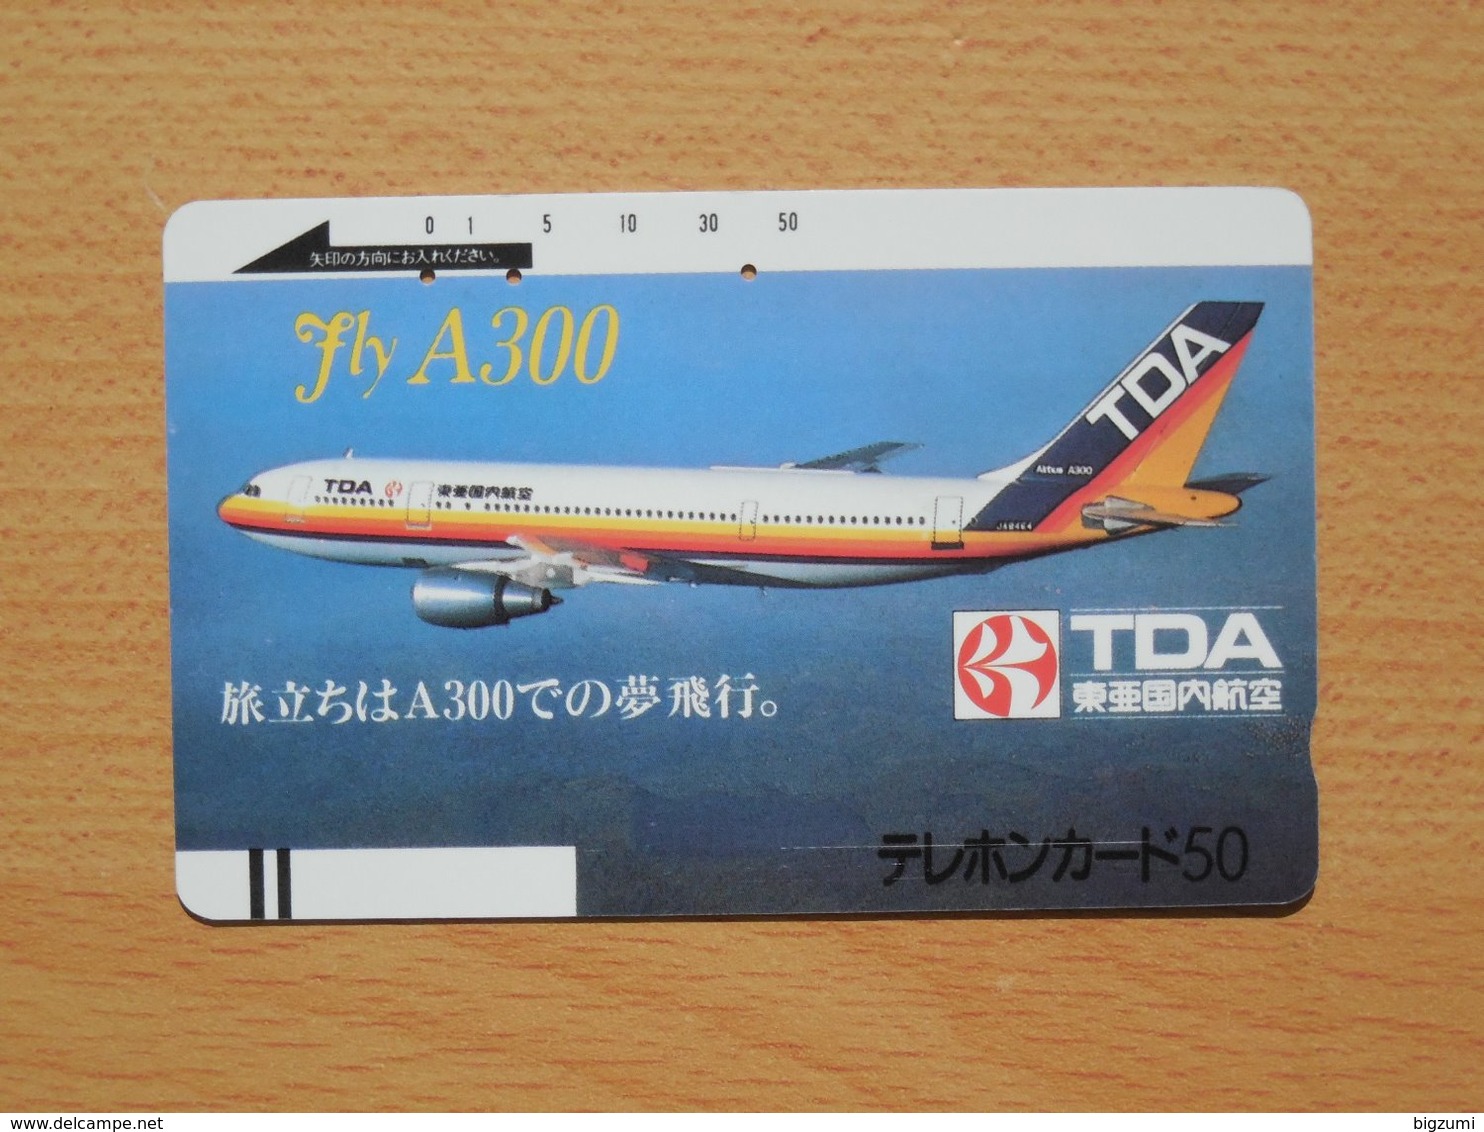 Japon Japan Free Front Bar, Balken Phonecard - 110-337 / Airline TDA - Airplanes